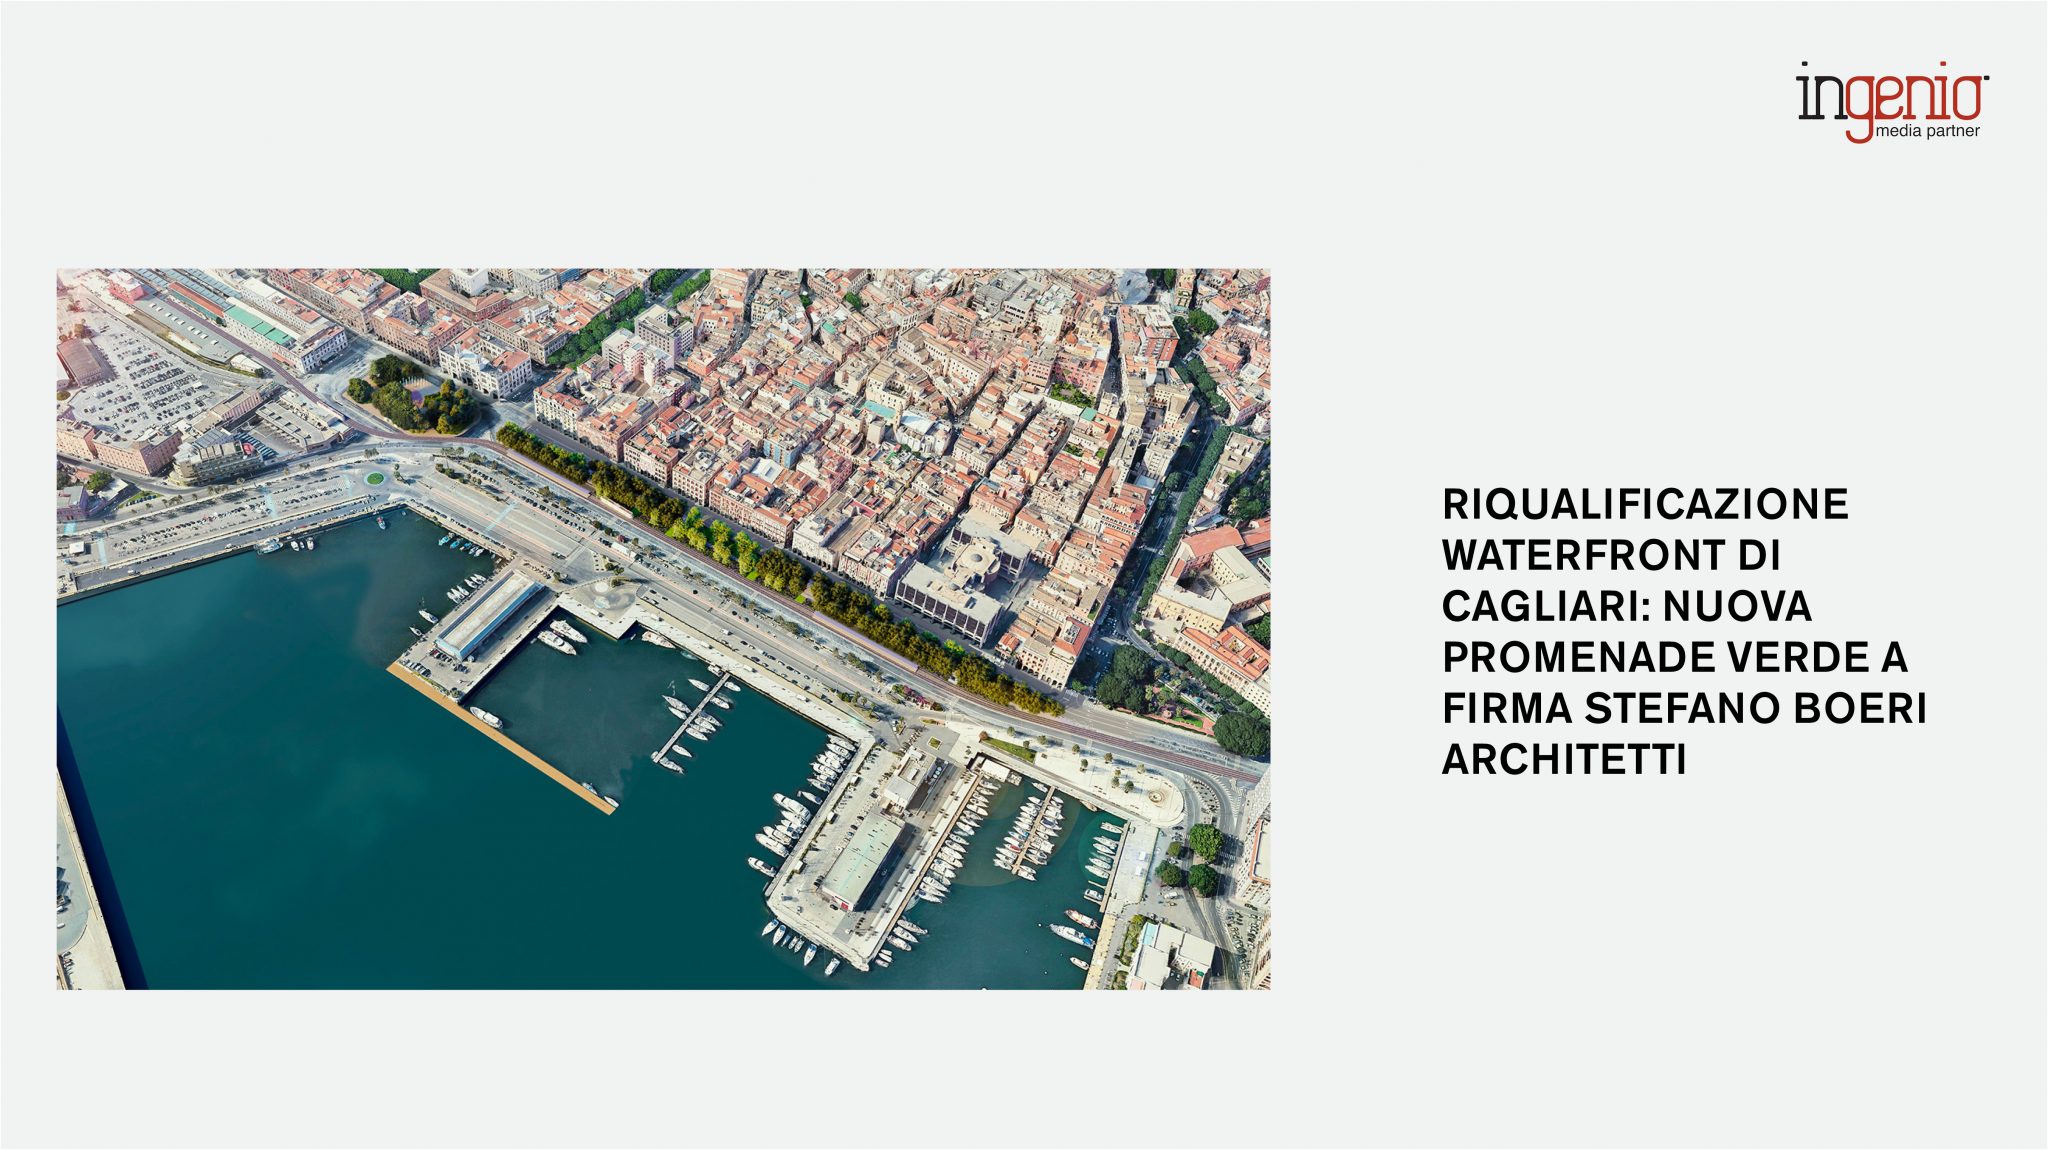 Cagliari waterfont on ingenio